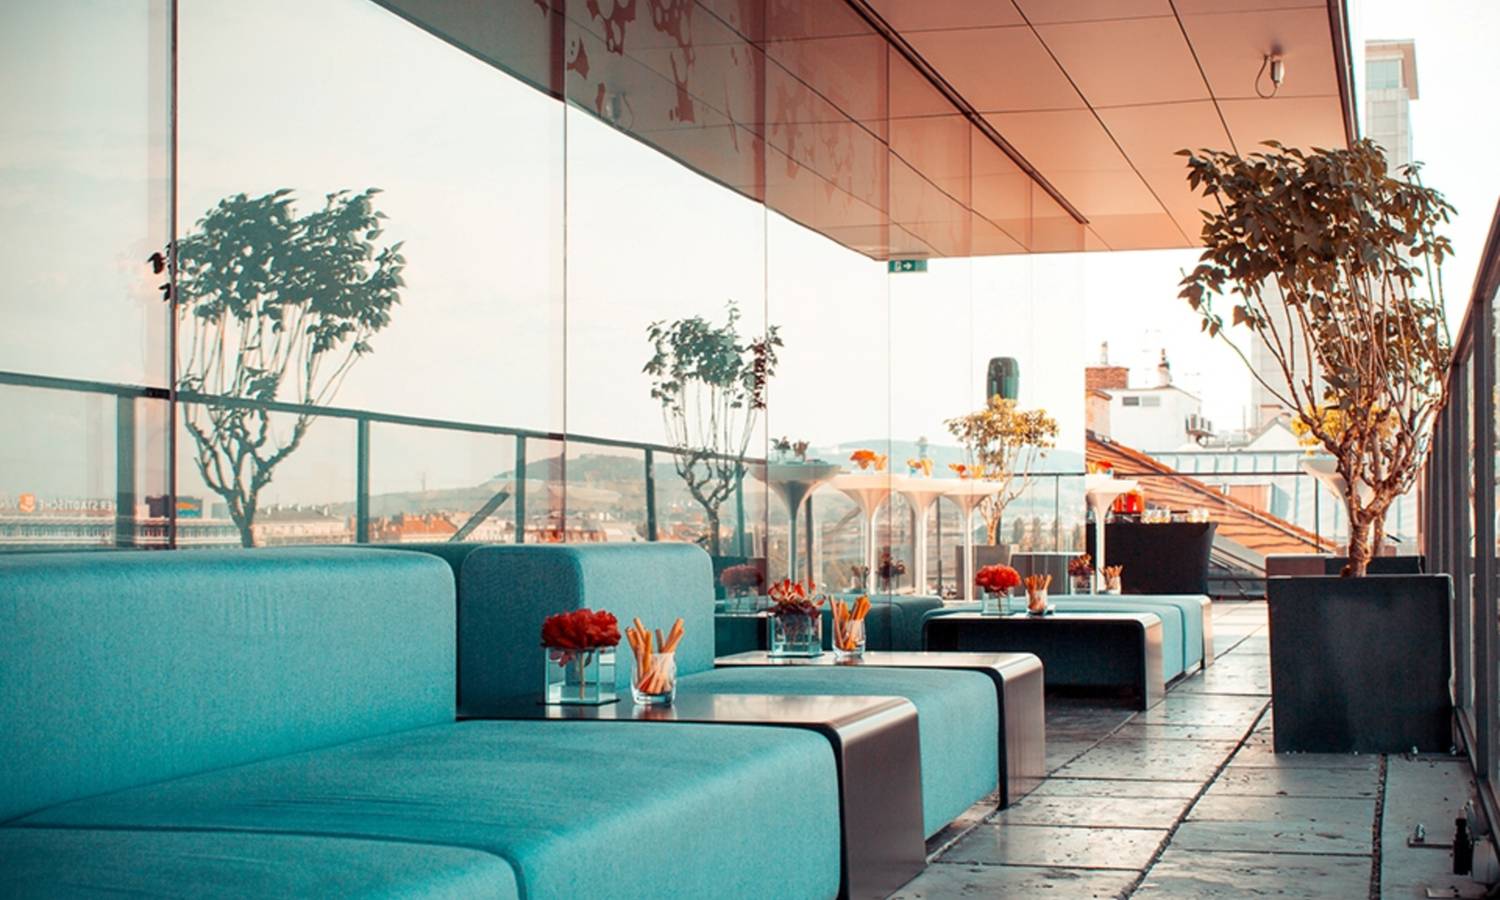 Blick auf eine Dachterasse mit gläserner Front. Davor stehen Lounge Möbel in türkiser Farbe mit Snacks und Tischdeko.